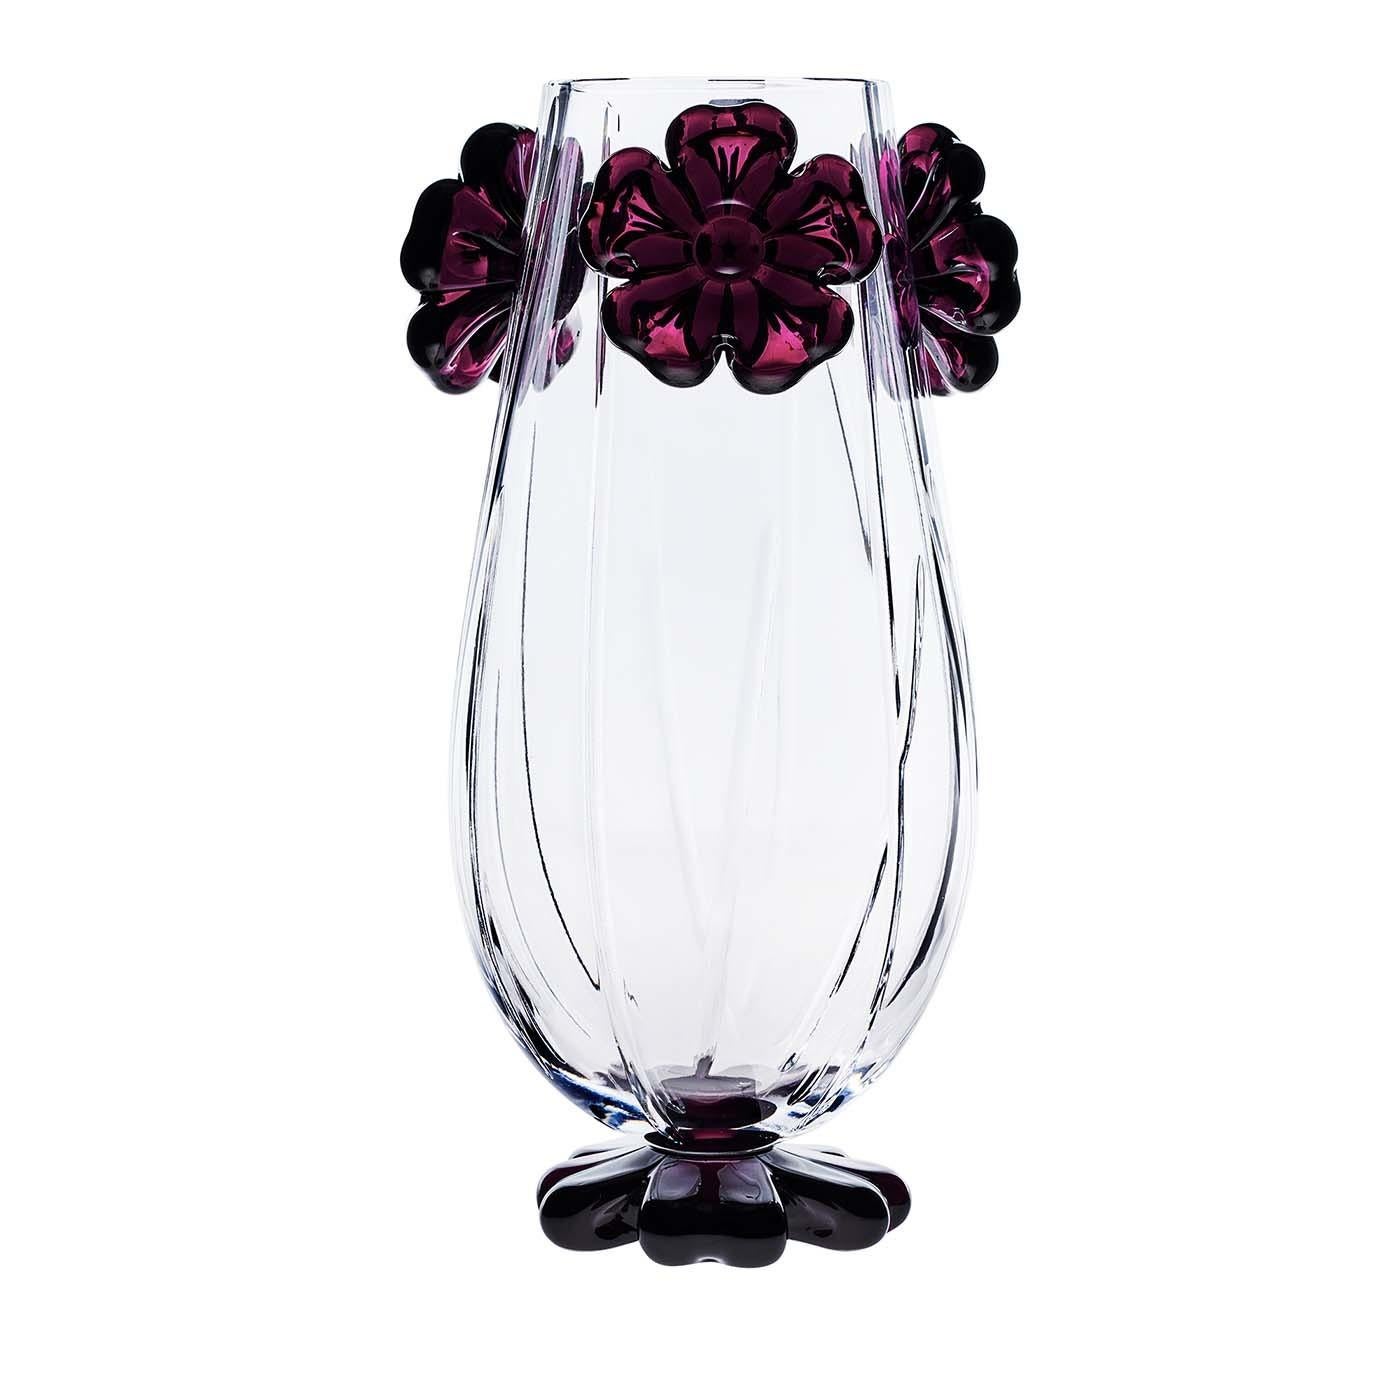 Superbe exemple d'artisanat exquis, ce vase a été entièrement fabriqué à la main et constitue une œuvre d'art qui peut être exposée n'importe où dans une maison classique ou moderne. Il comprend un corps délicatement incurvé en cristal transparent